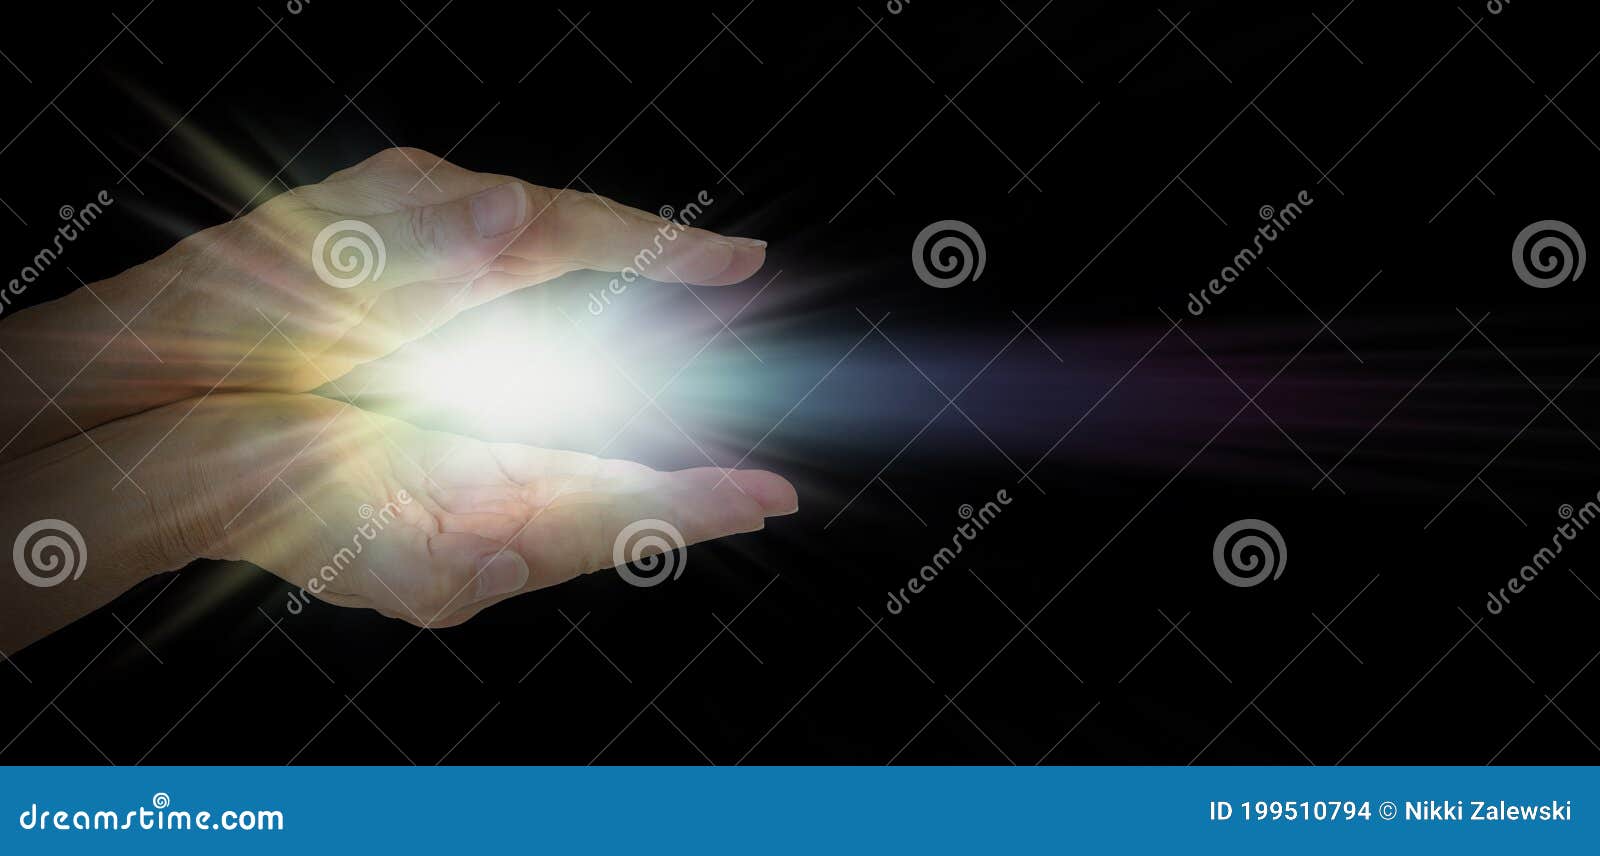 the healing hands of a lightworker